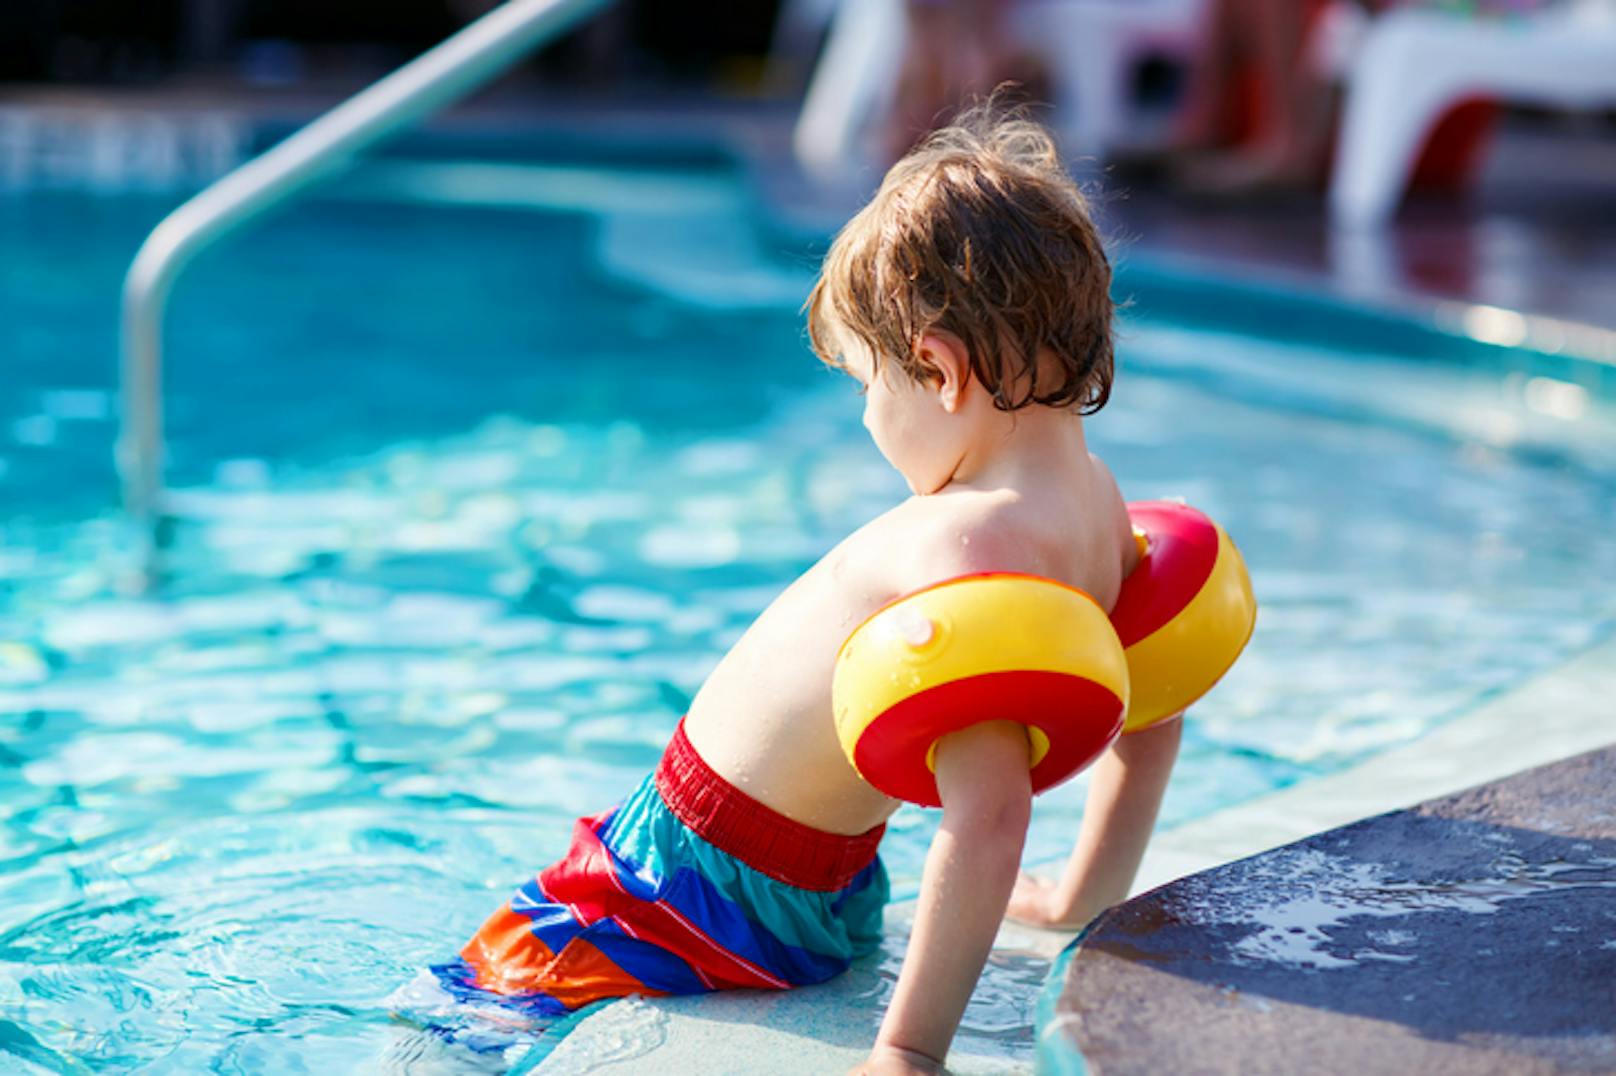 Die Experten raten: "Kinder am Wasser nie unbeaufsichtigt lassen".